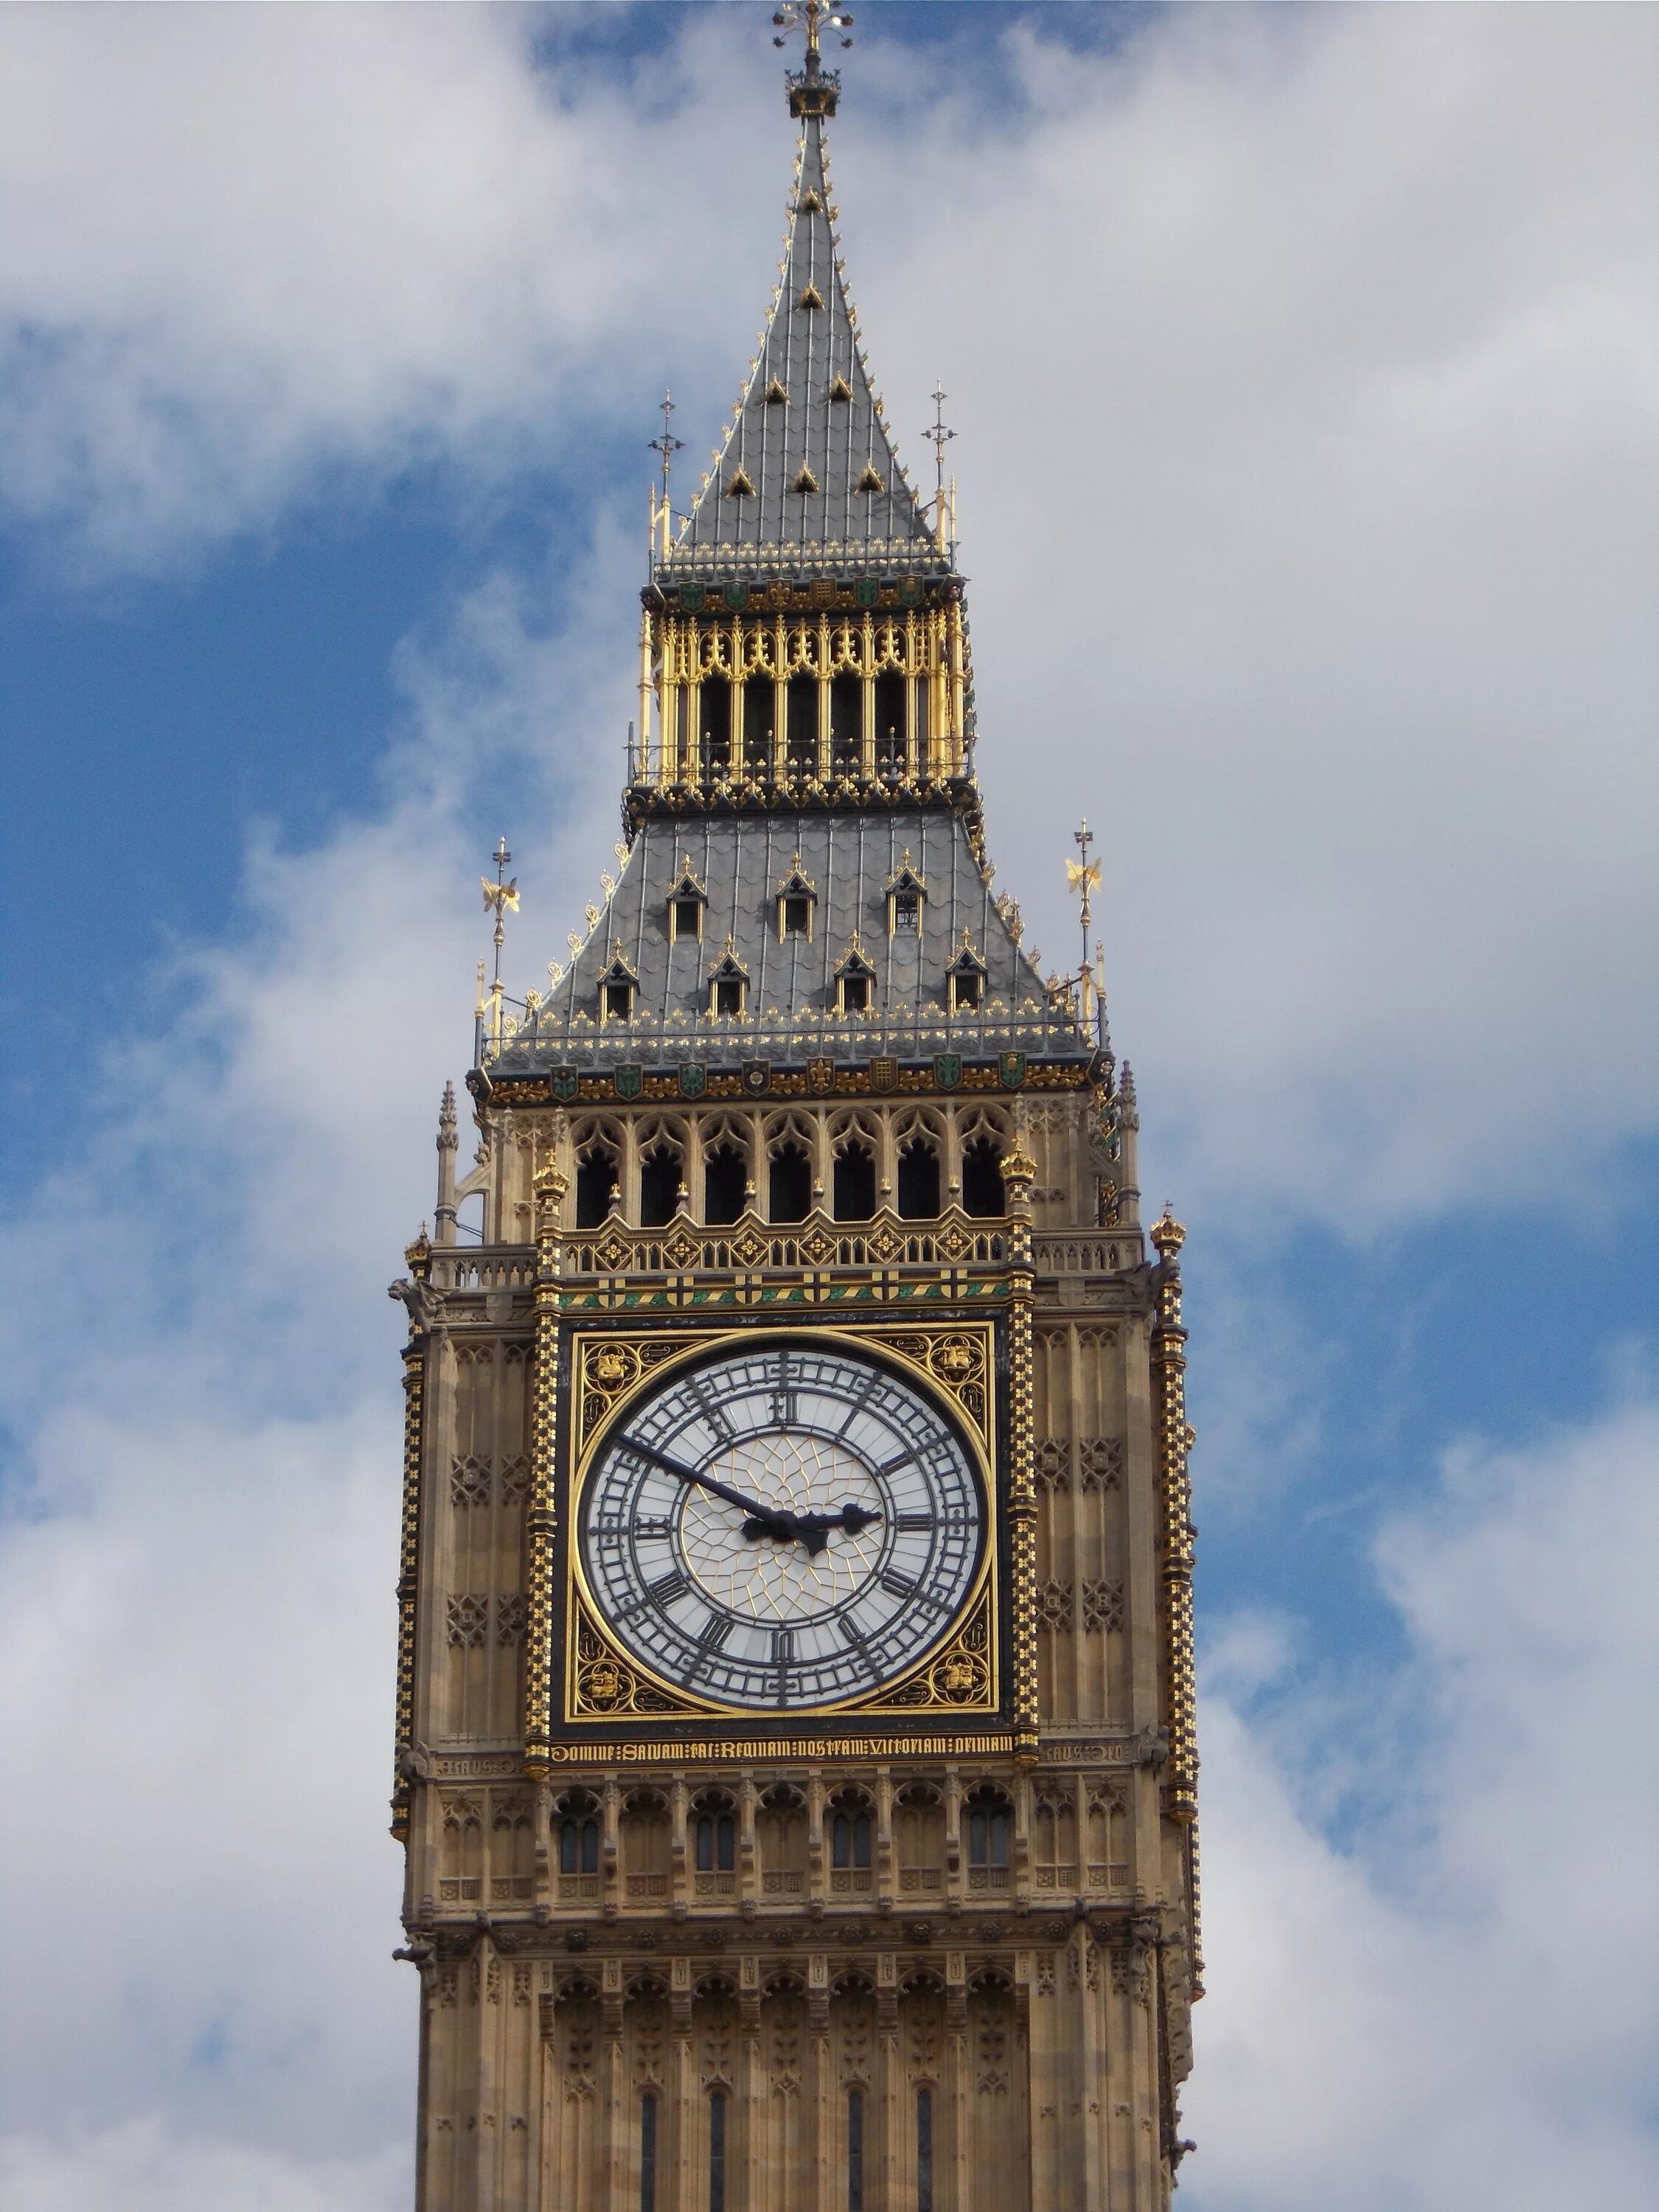 Watching britain. Башня Биг Бен в Лондоне. Биг-Бен (башня Елизаветы). Часовая башня Биг Бен. Англия часы Биг Бен.